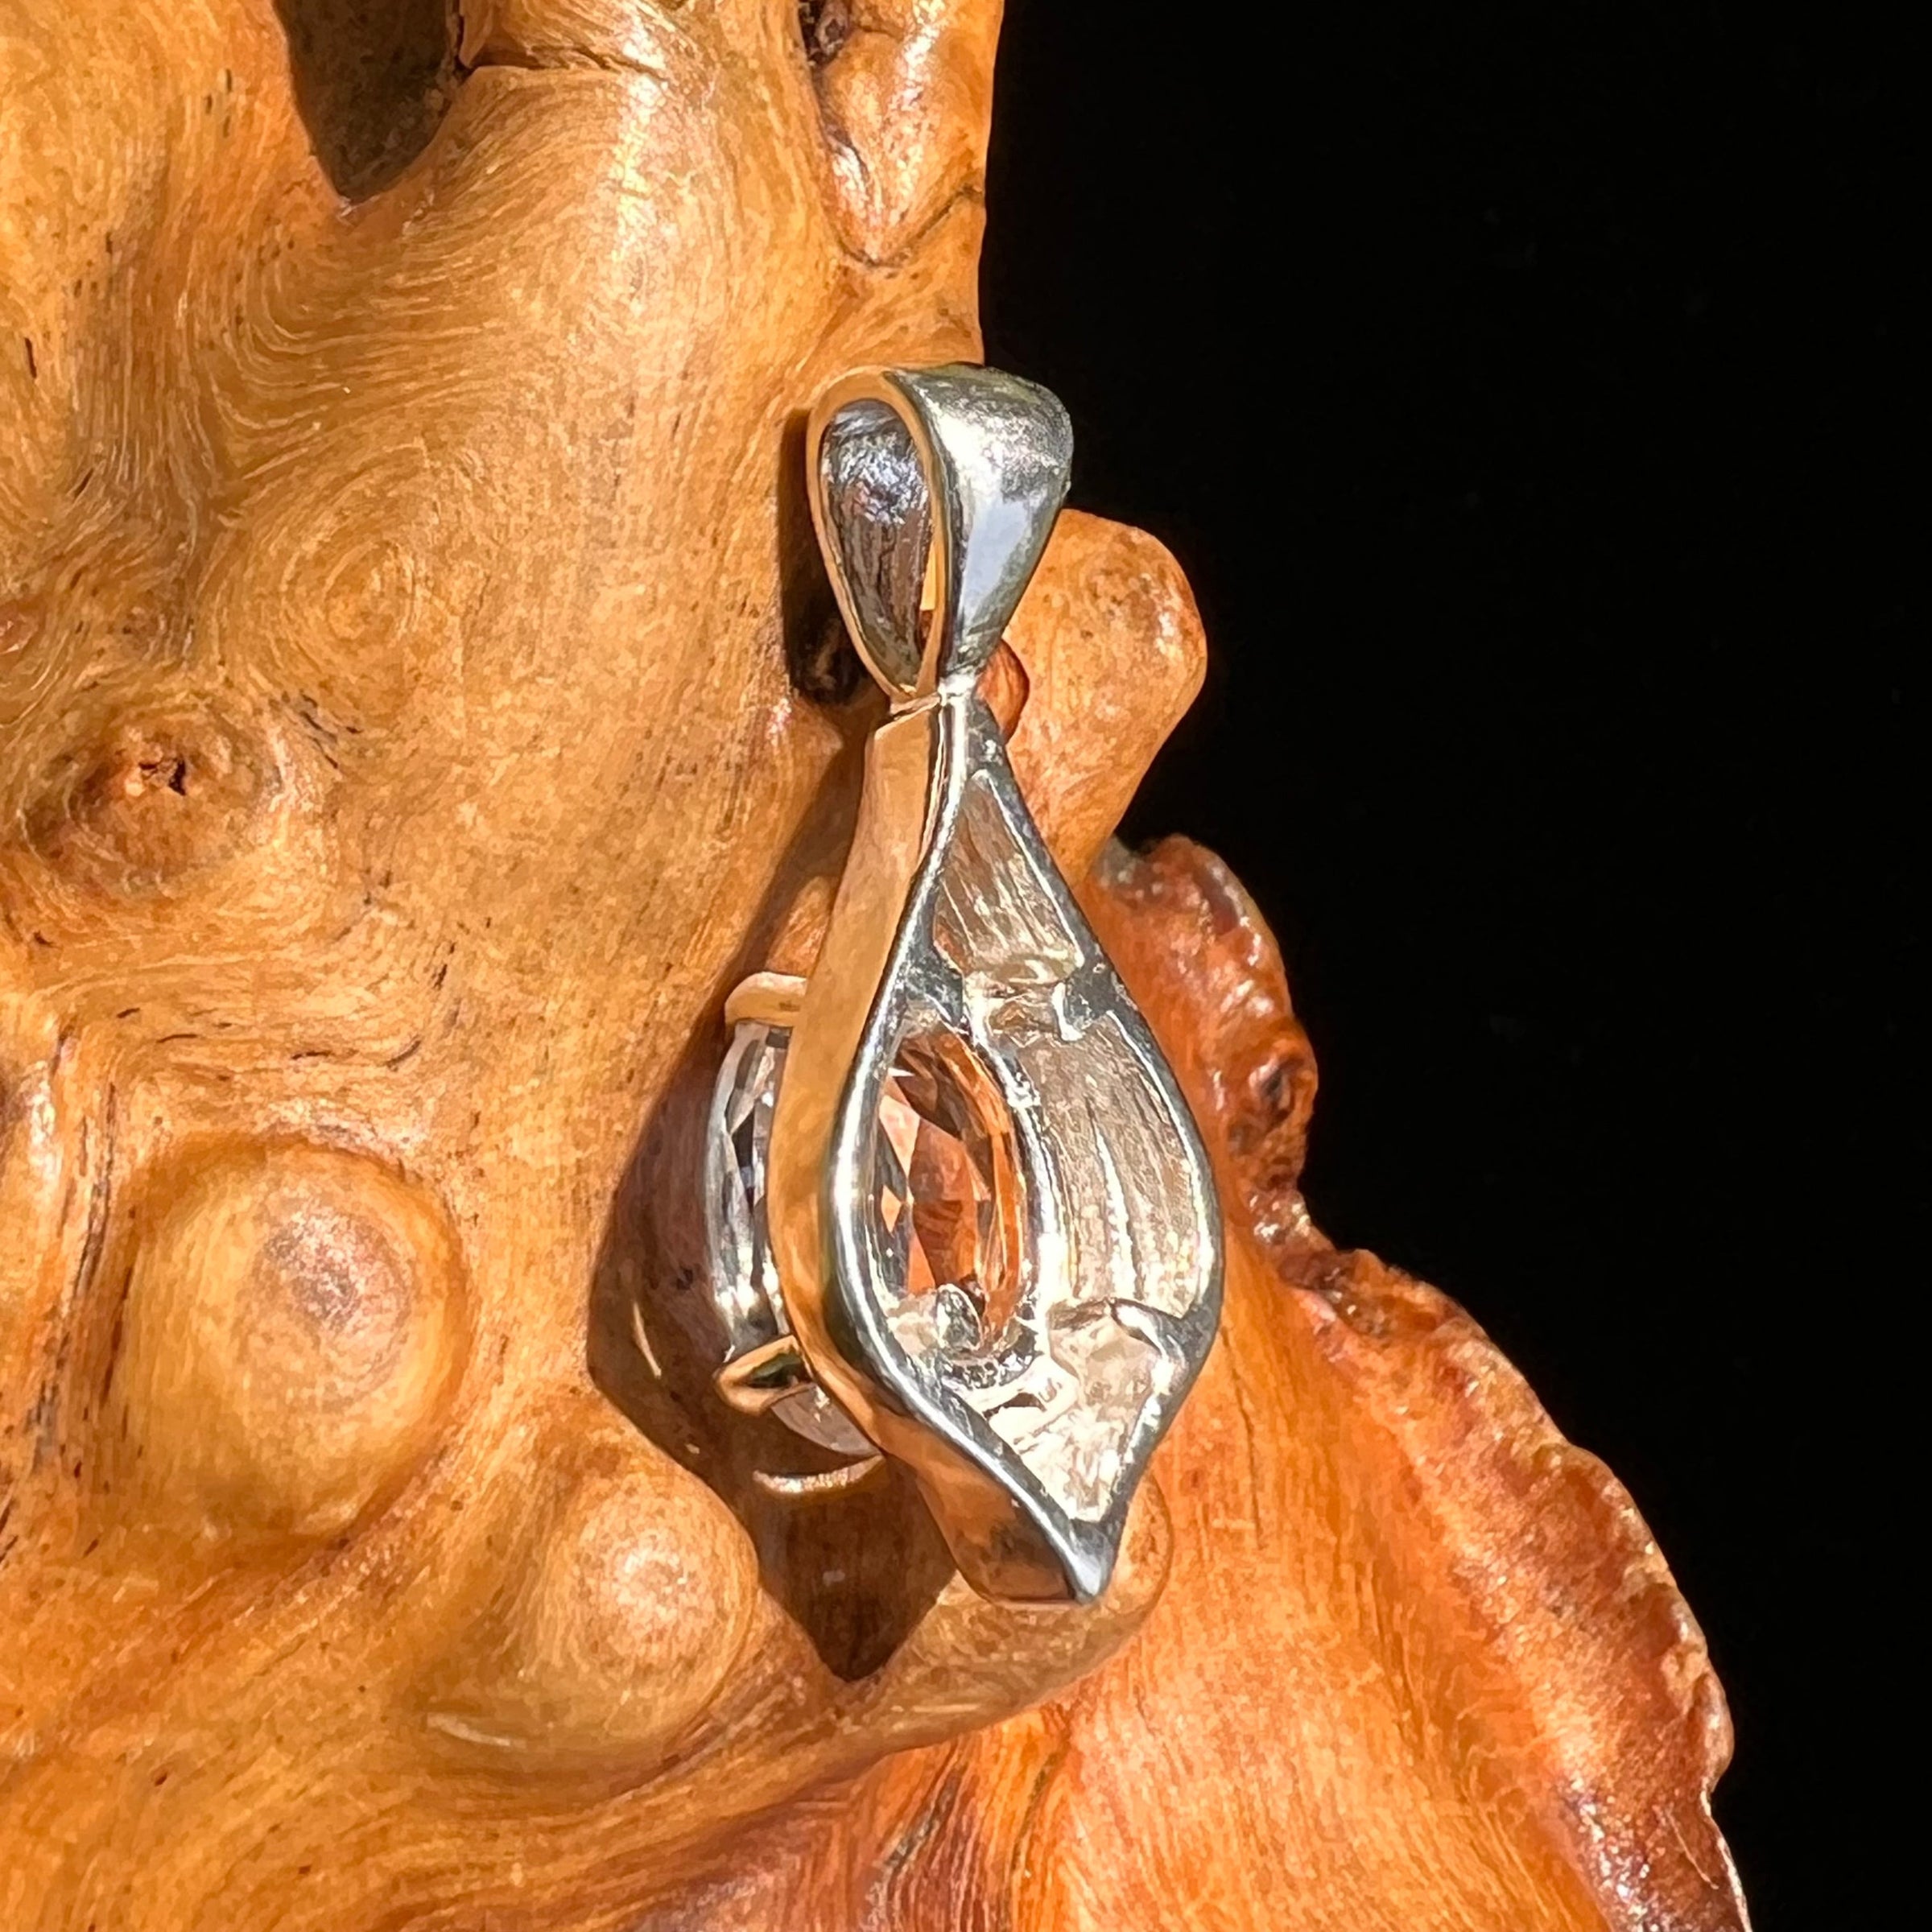 Faceted Danburite Pendant Sterling Silver #5268-Moldavite Life